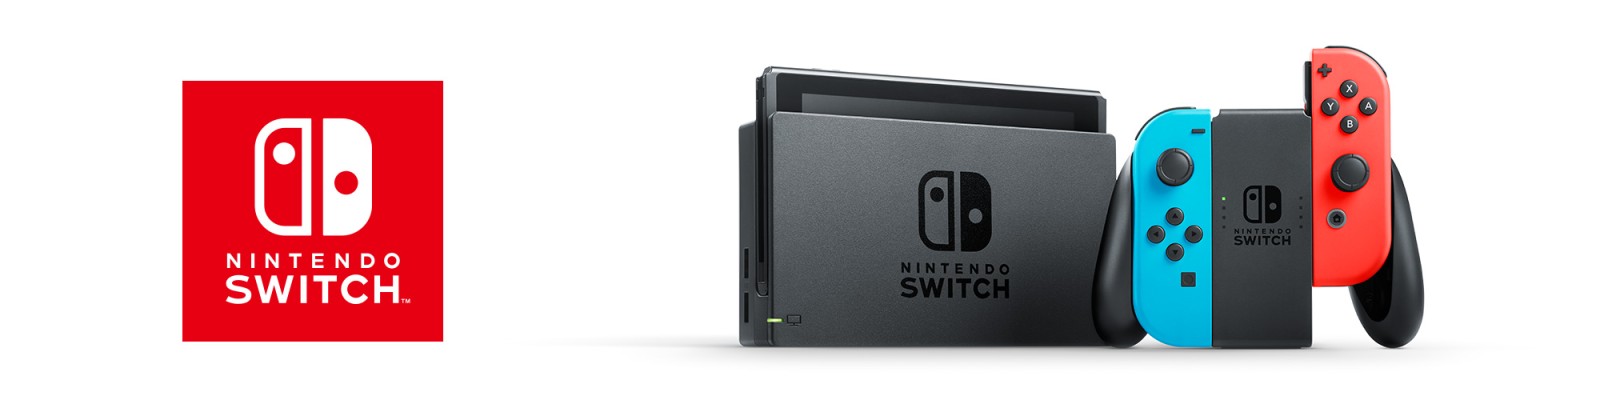 Klantenservice voor Nintendo Switch